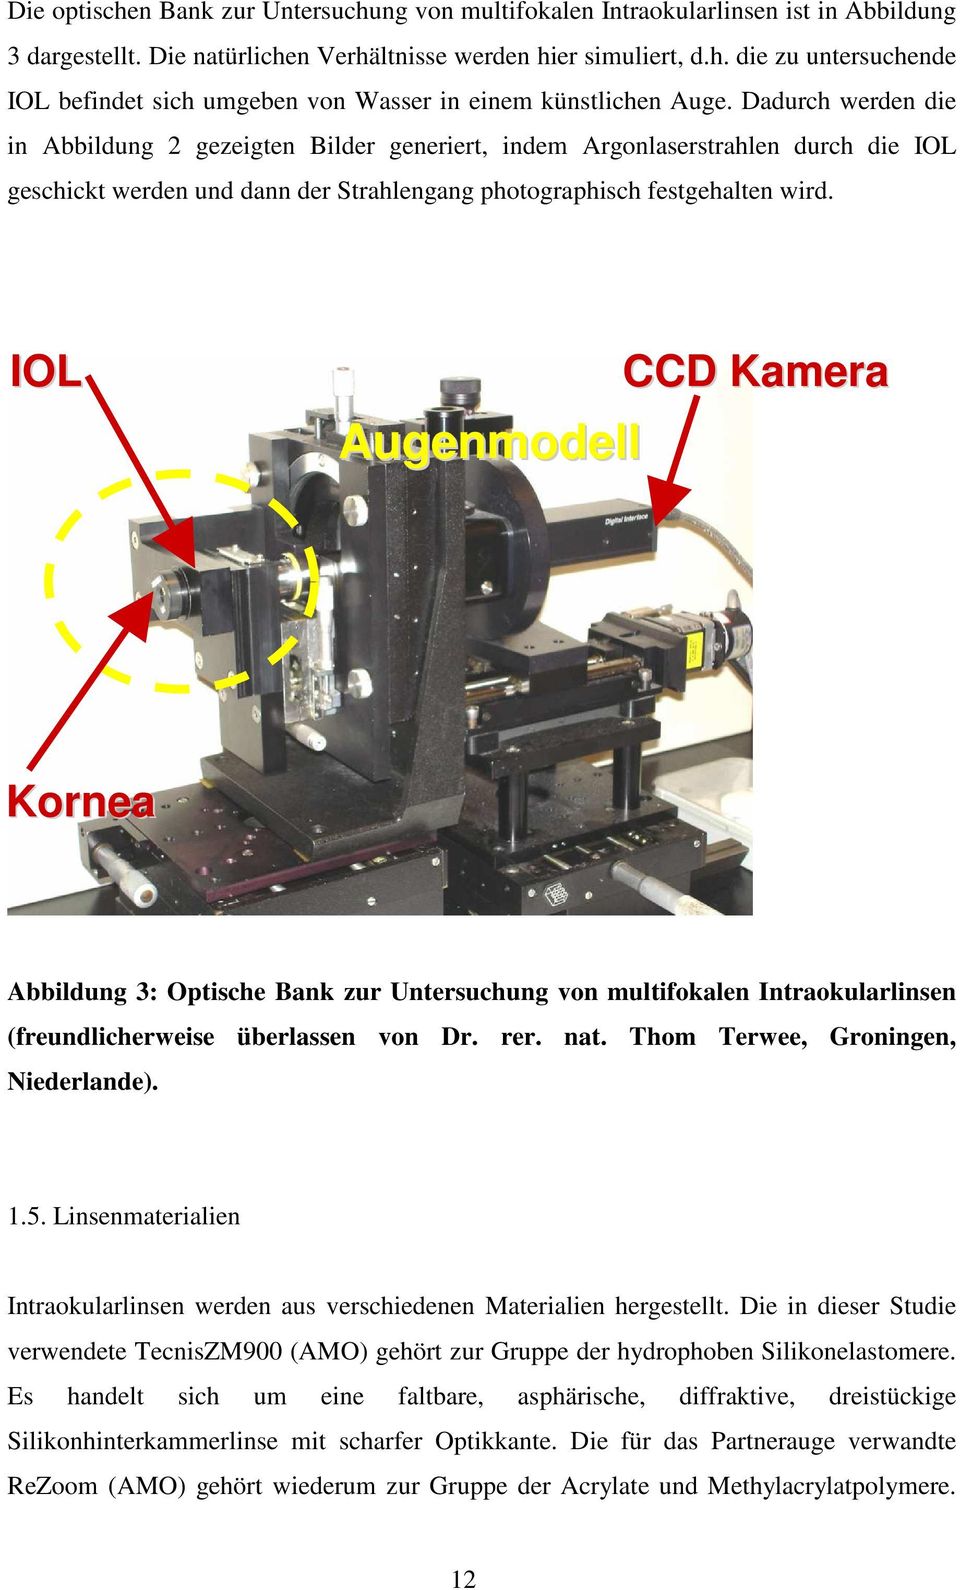 IOL Augenmodell CCD Kamera Kornea Abbildung 3: Optische Bank zur Untersuchung von multifokalen Intraokularlinsen (freundlicherweise überlassen von Dr. rer. nat. Thom Terwee, Groningen, Niederlande).